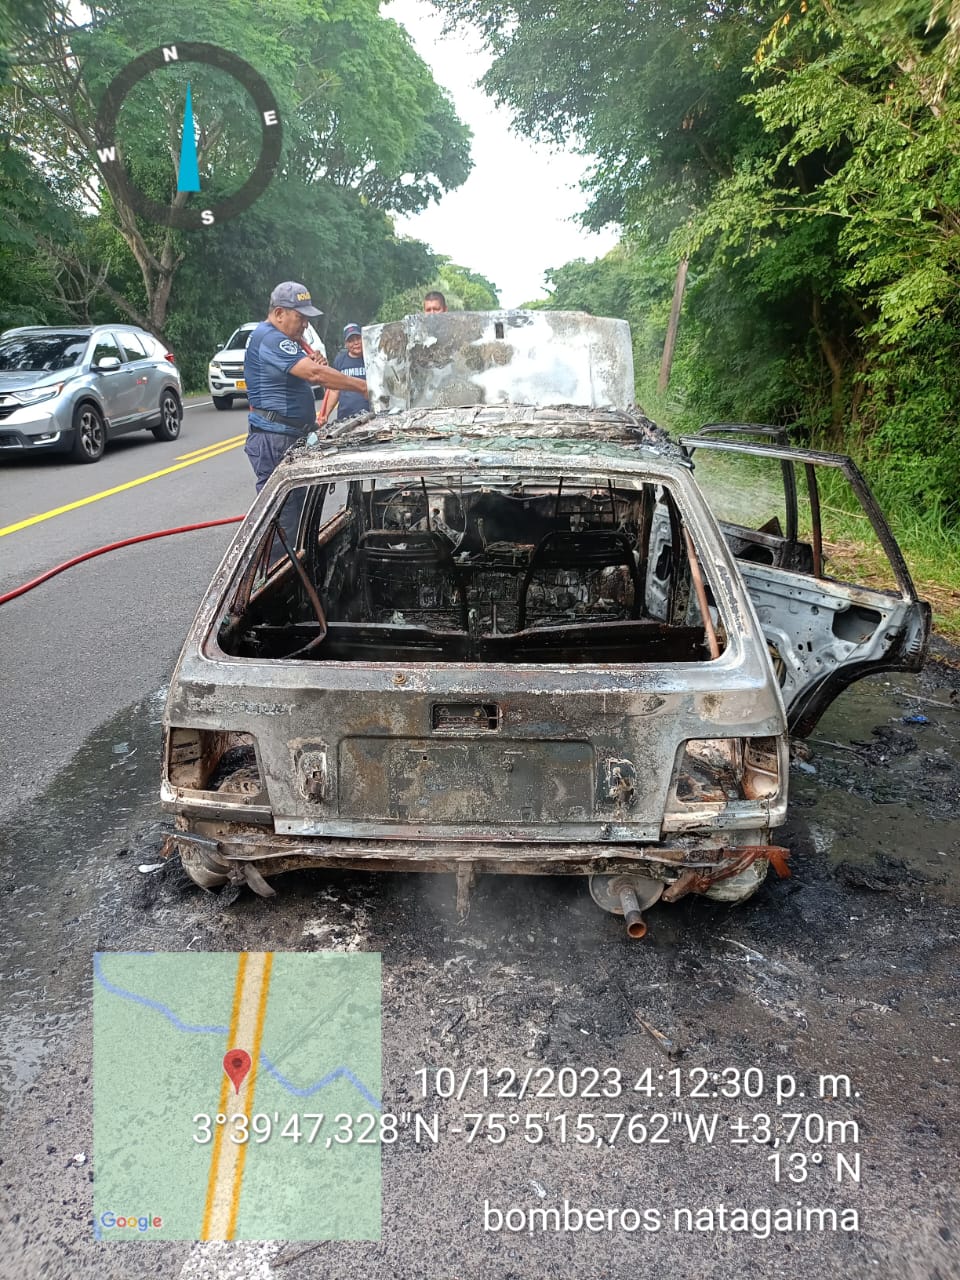 Incendio vehicular dejó dos personas heridas en la vía Castilla - Natagaima 3